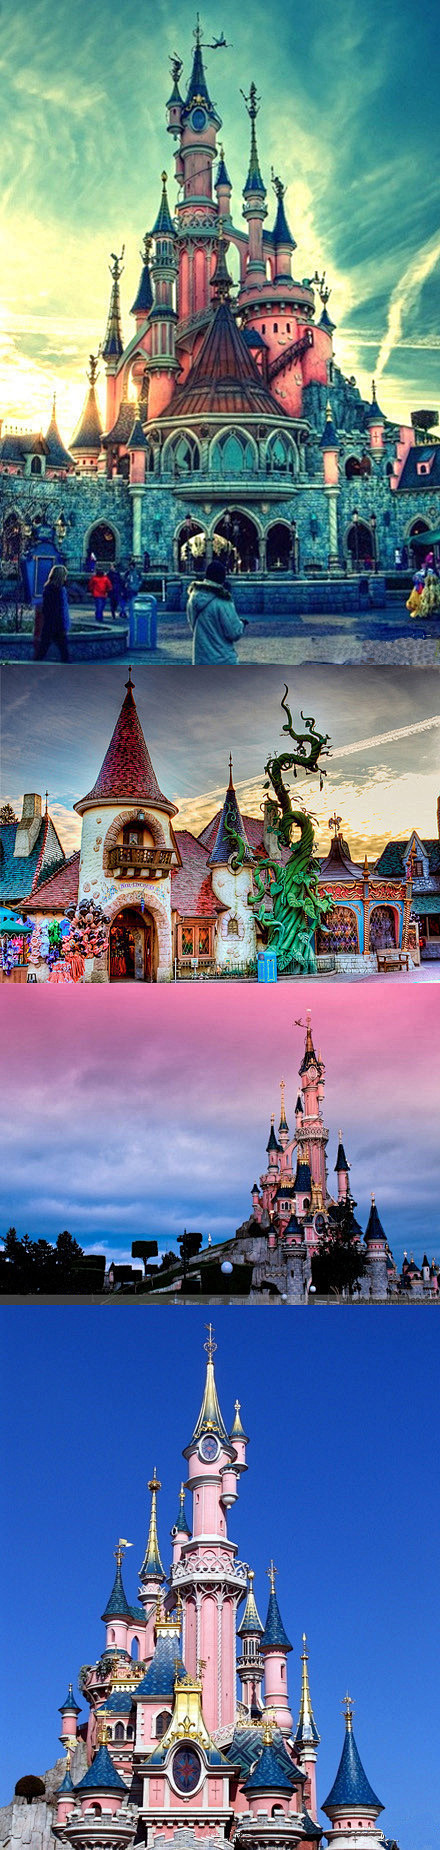 童话梦幻的城堡